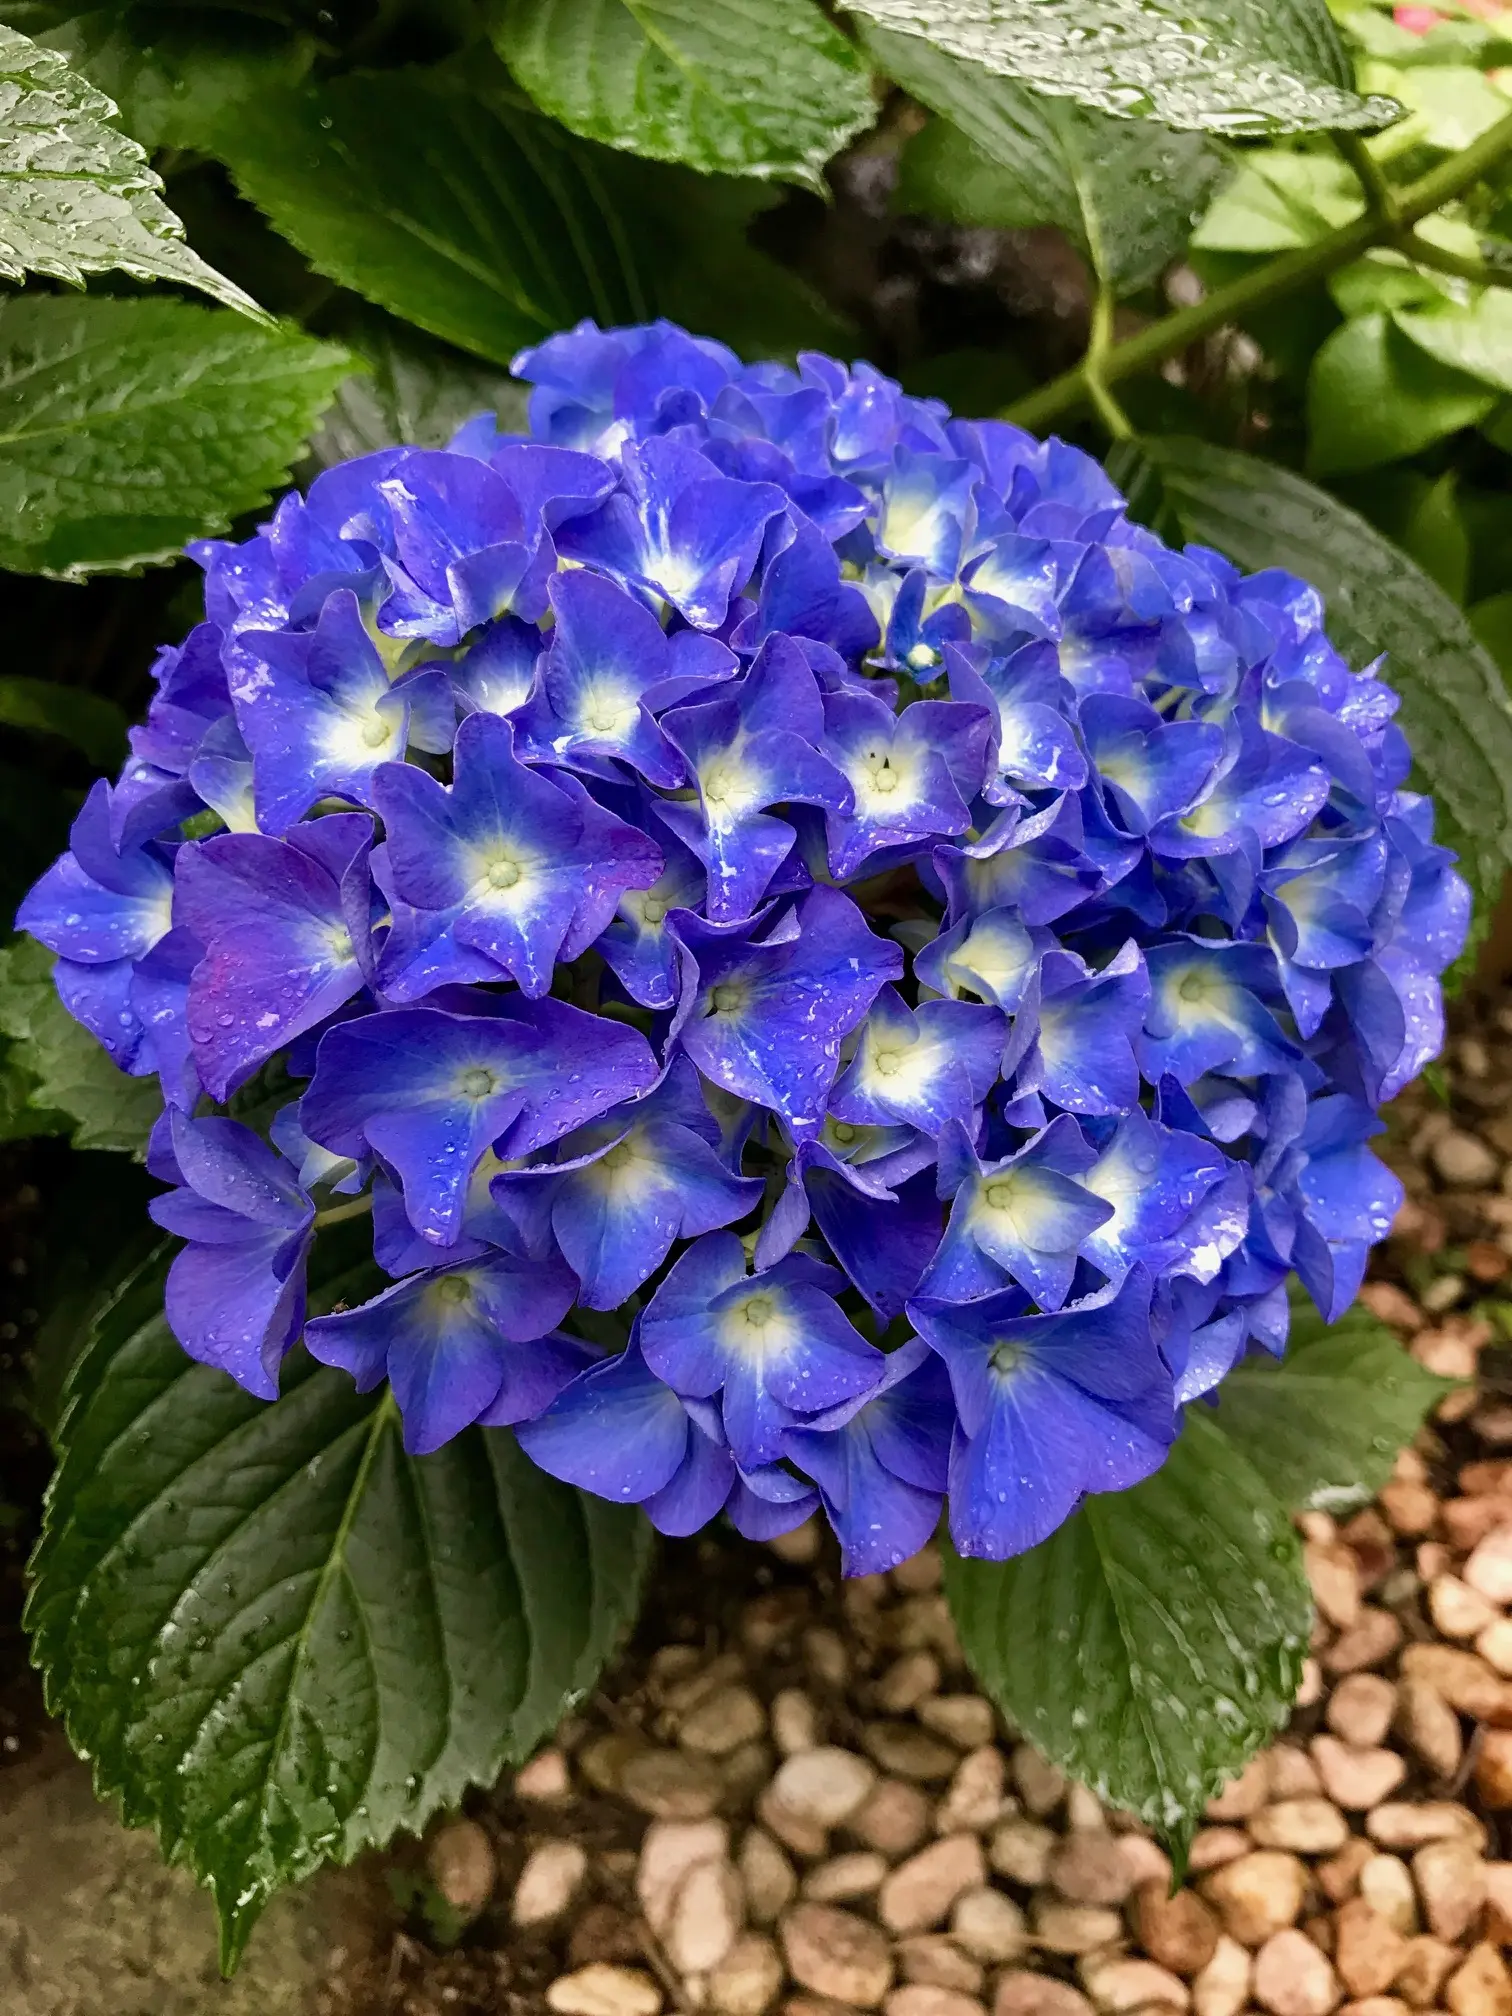 雨露を抱いた青い紫陽花